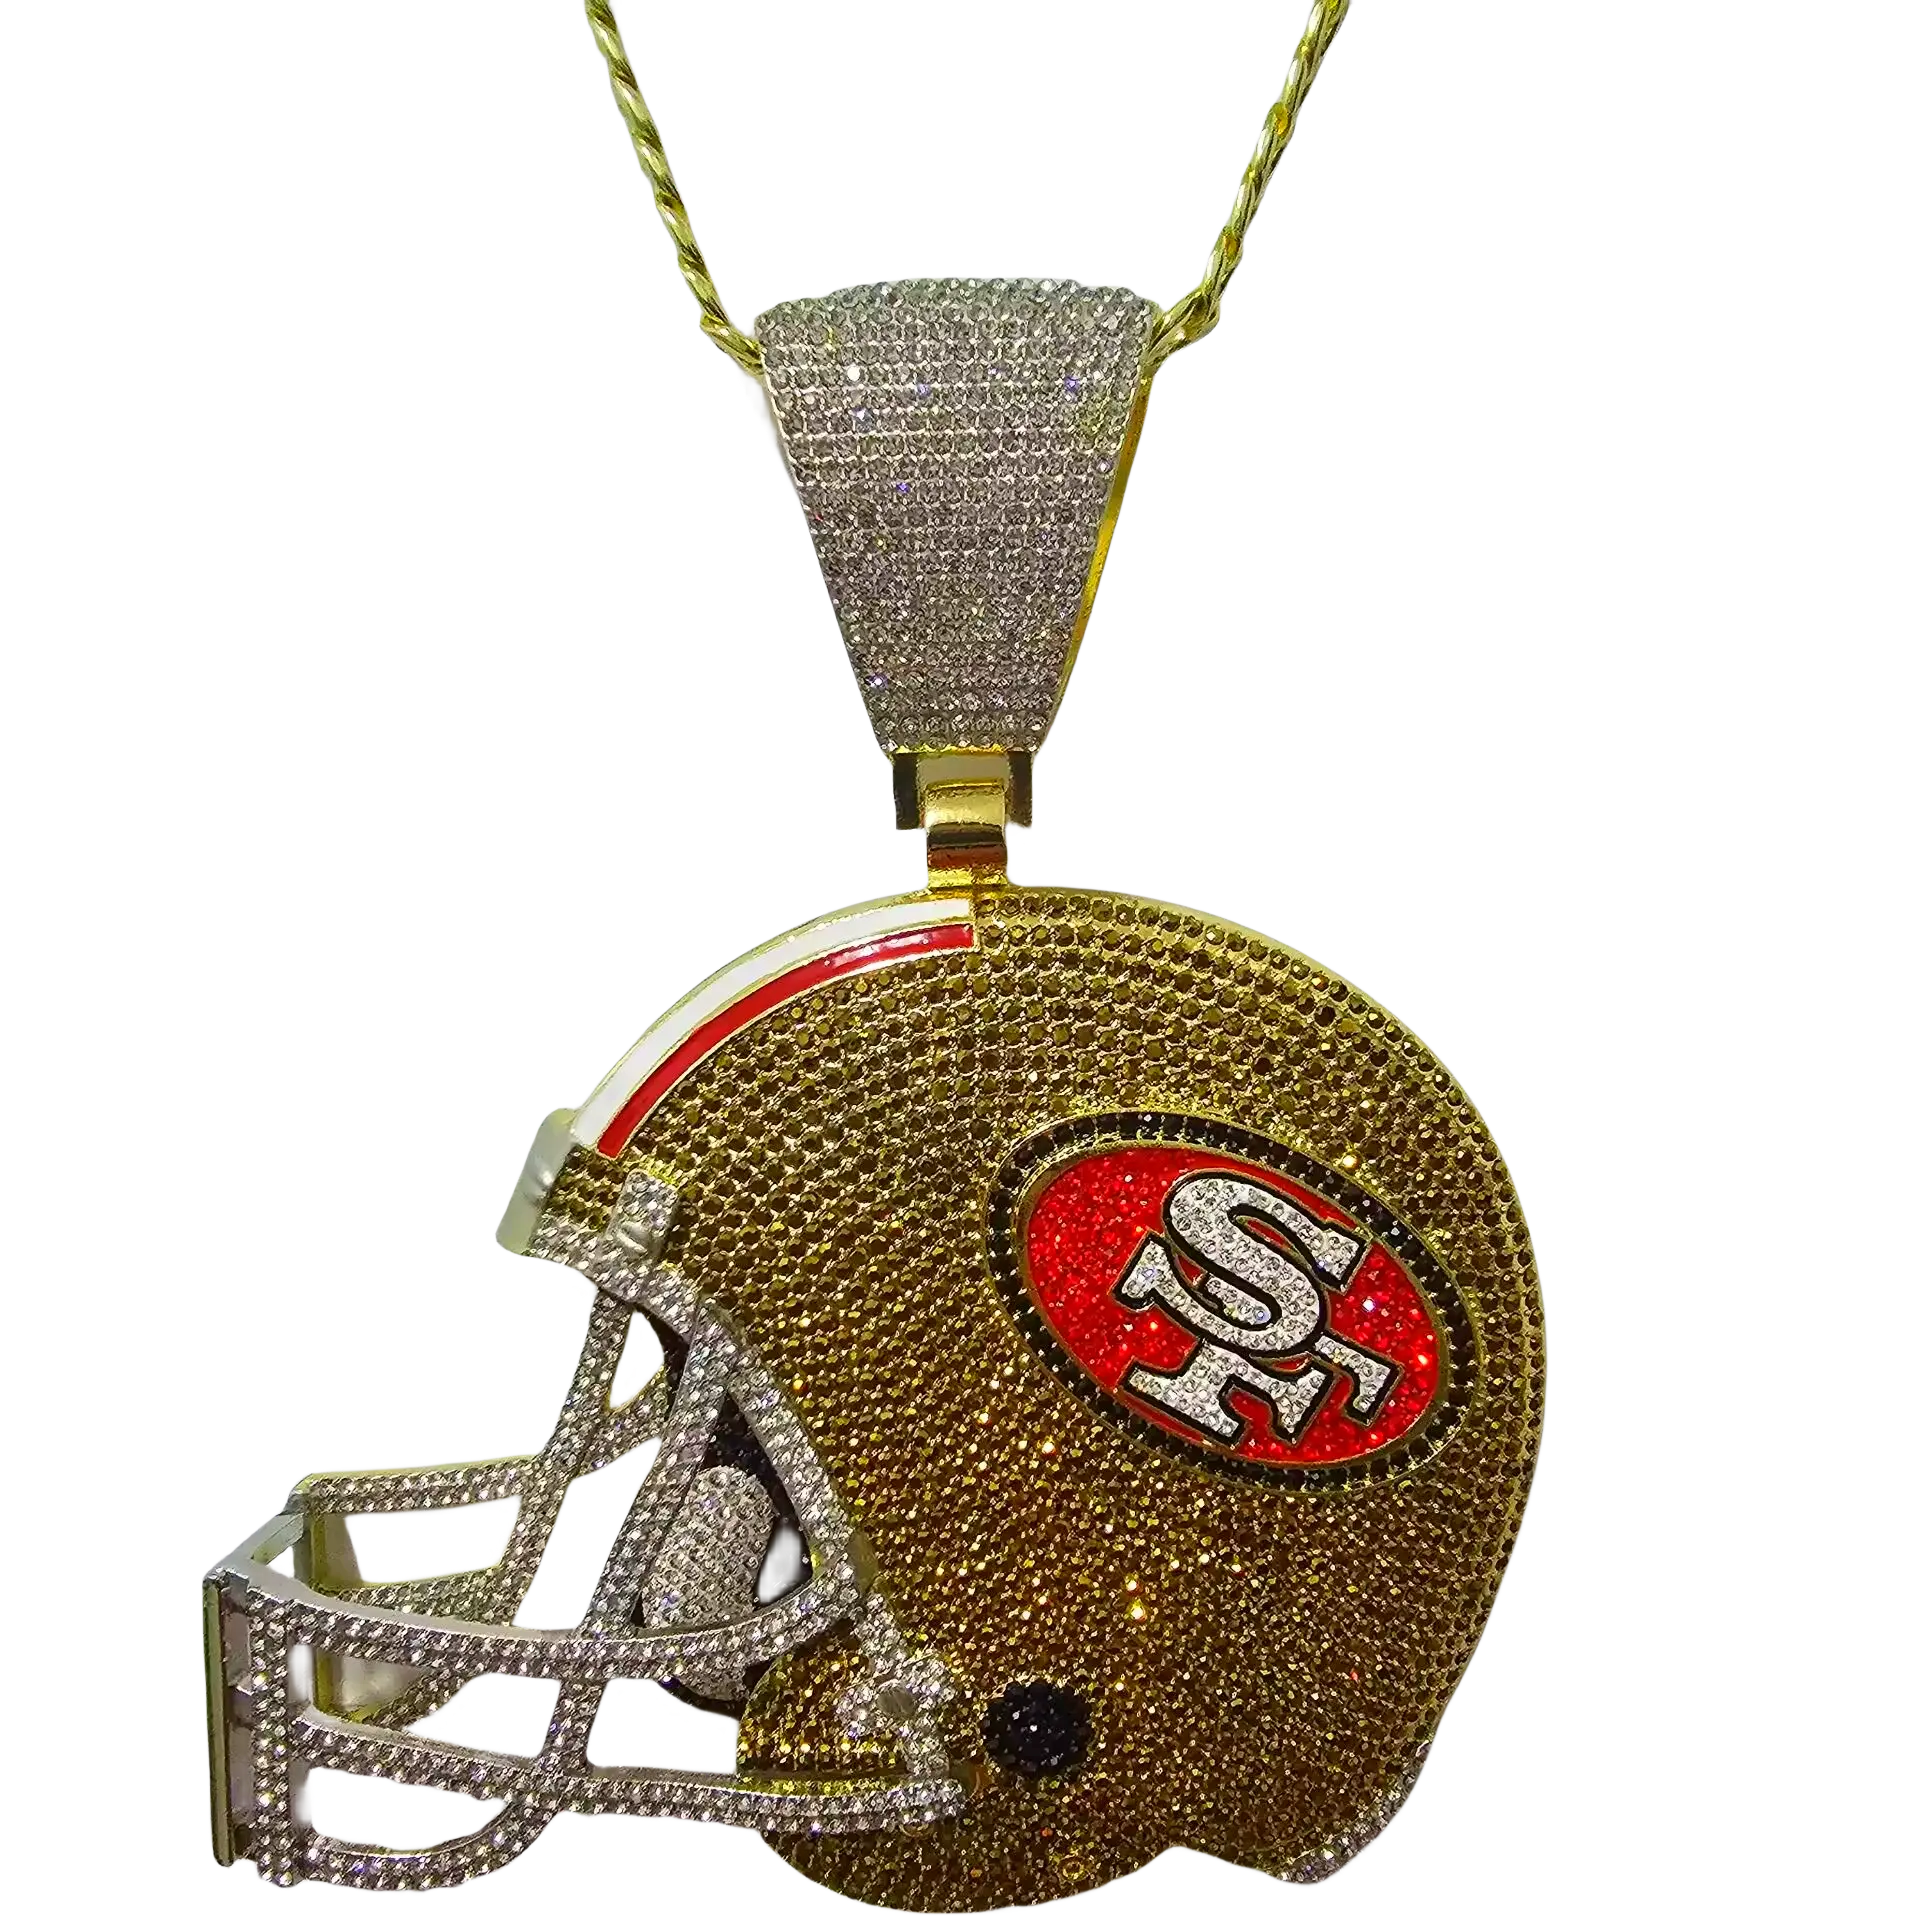 Personalize o colar com pingente Bling de medalhão SF 49ers Super Bowls 6"/8" para capacete com corrente